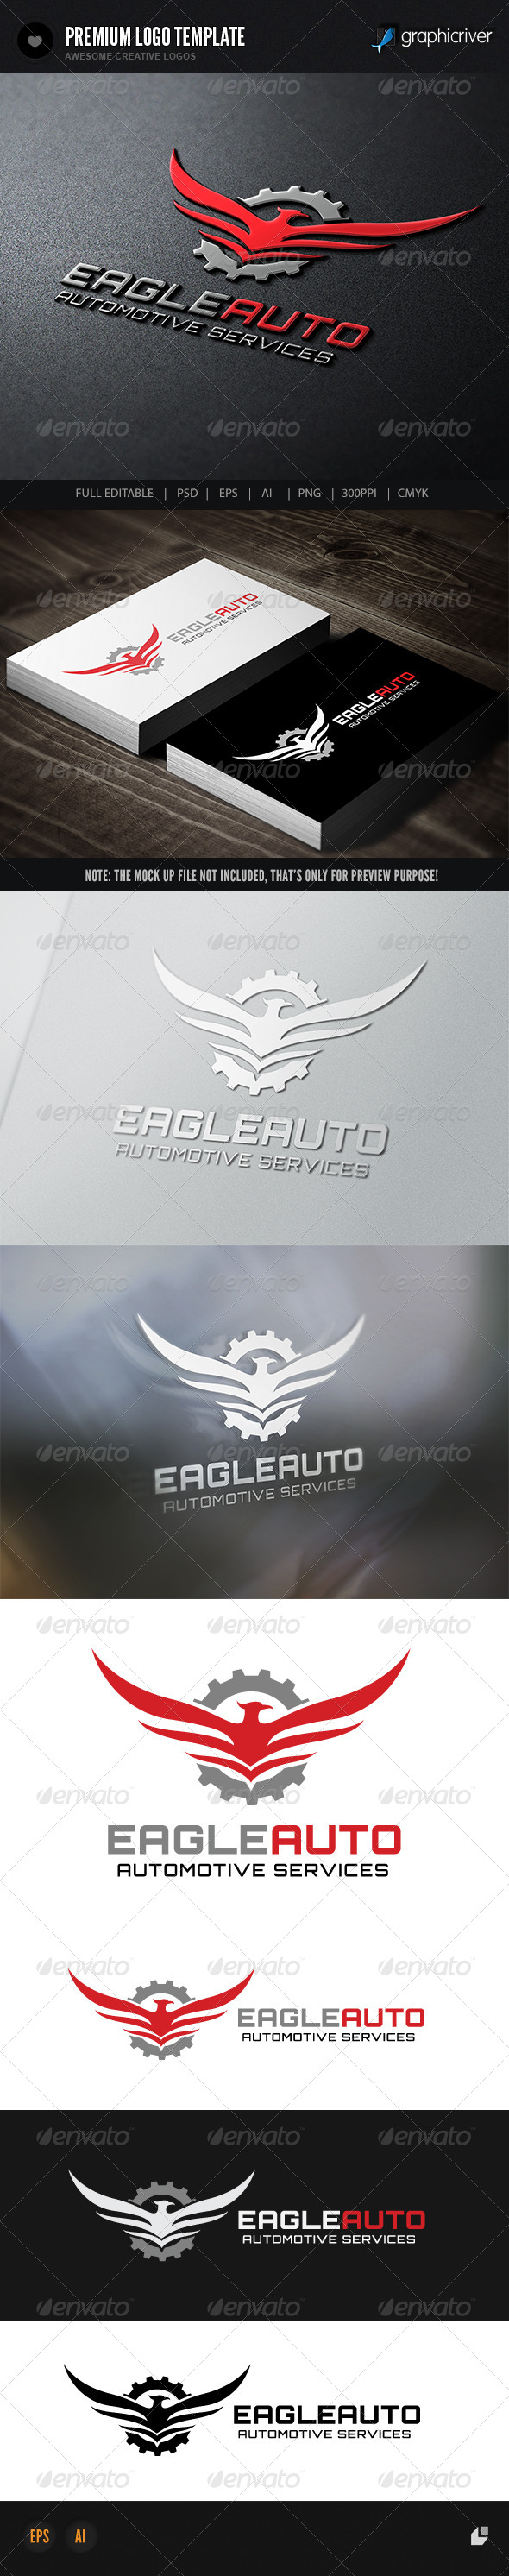 Eagle Automotive Services - Crests Logo Templates